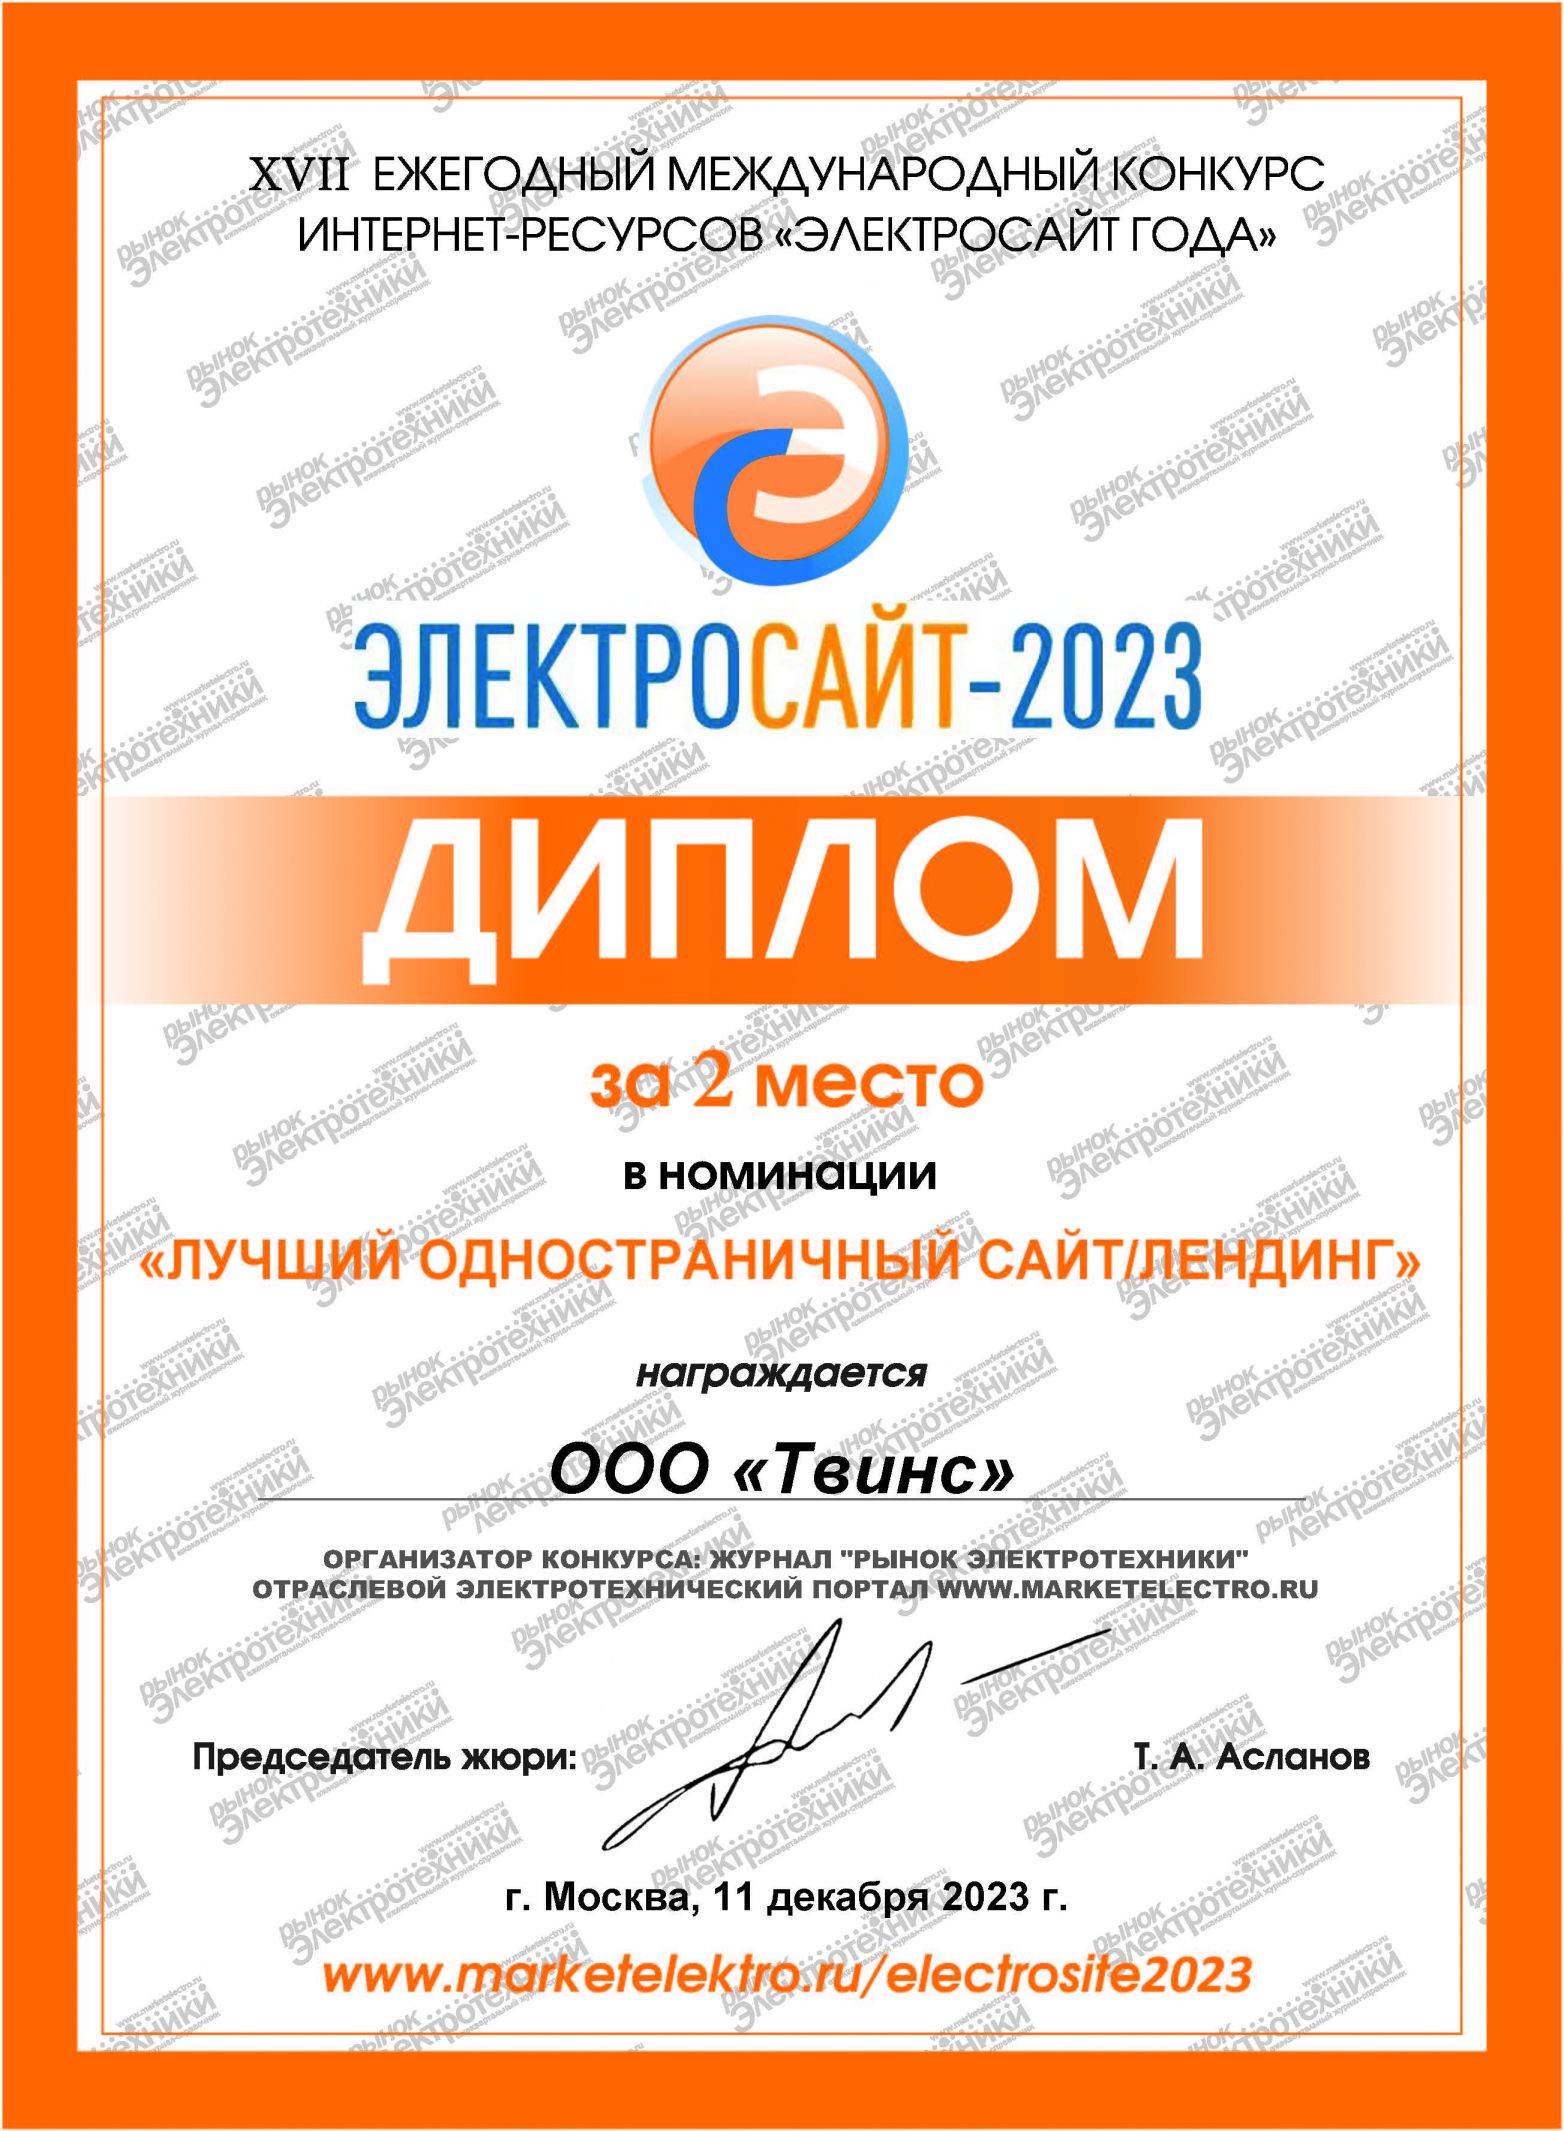 сертификат WebCanape Электросайт года 2023